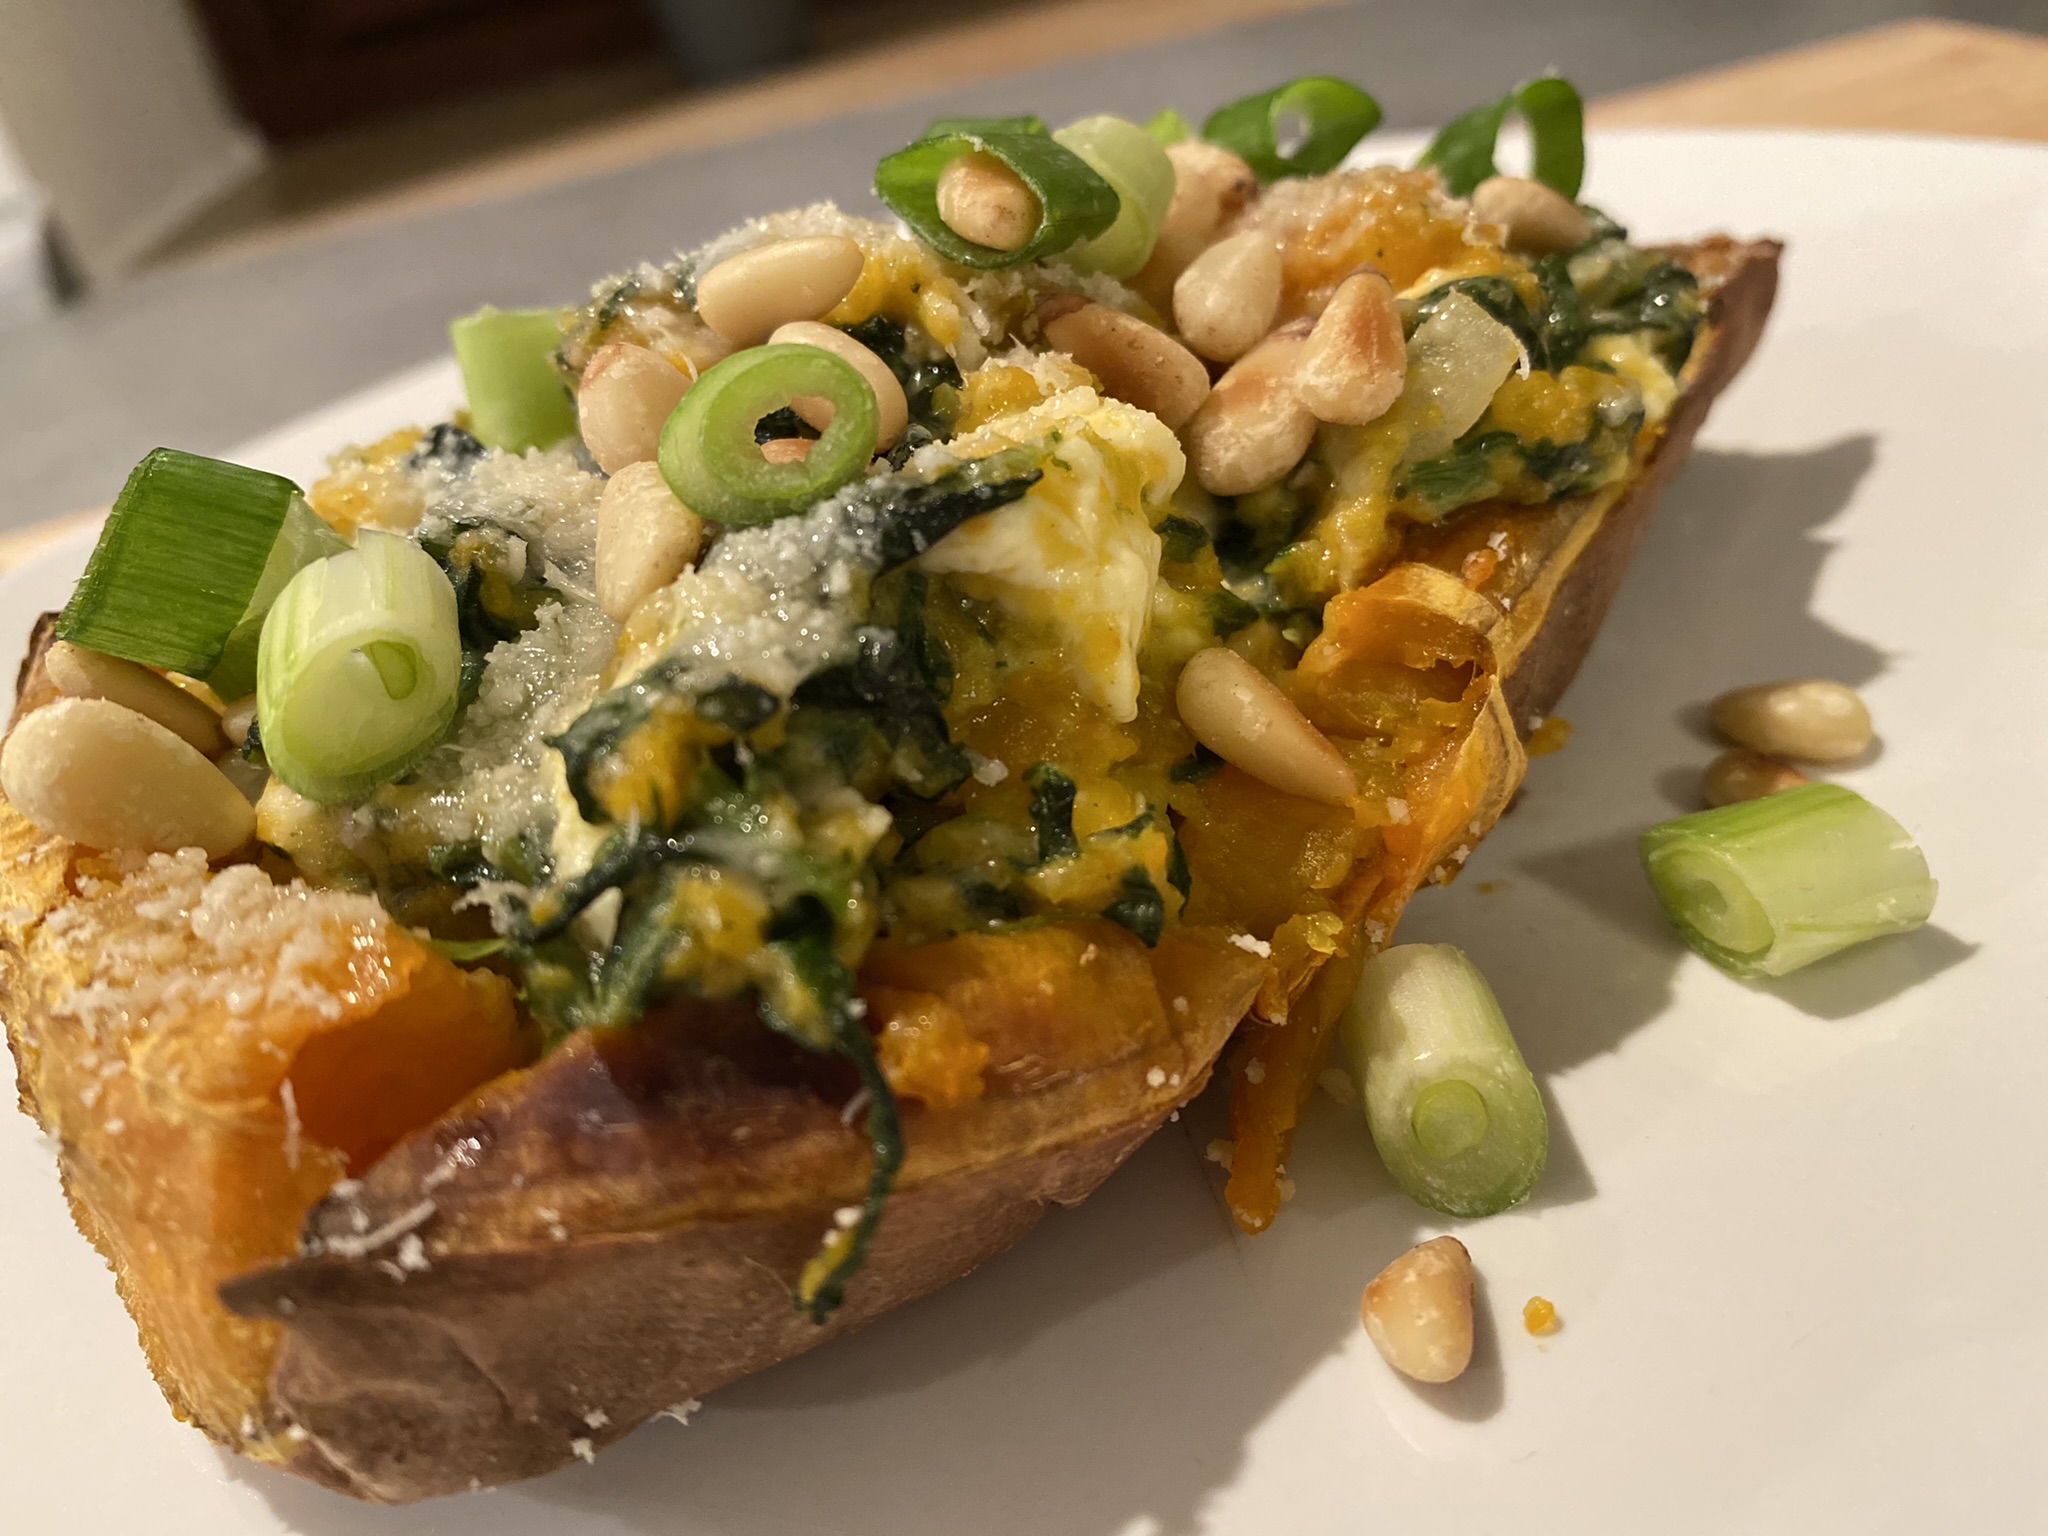 "Rezept des Monats Februar": Gefüllte Süßkartoffel mit Spinat und Feta